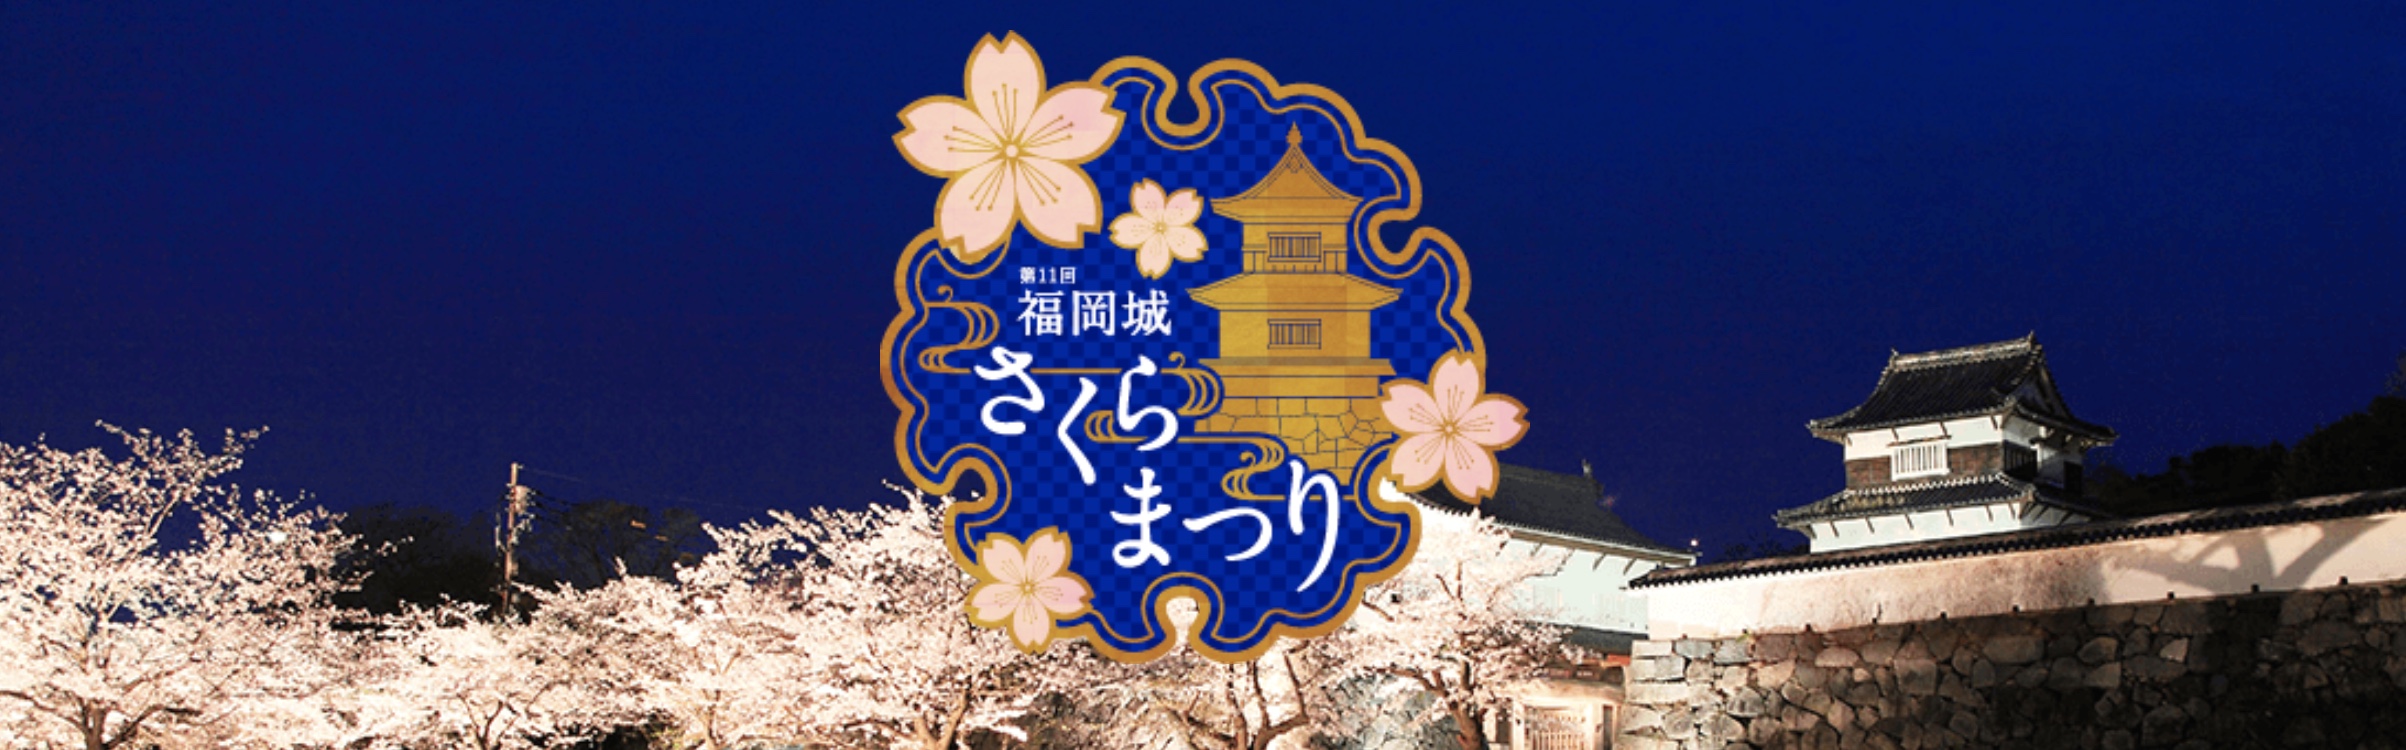 福岡城さくらまつり2021